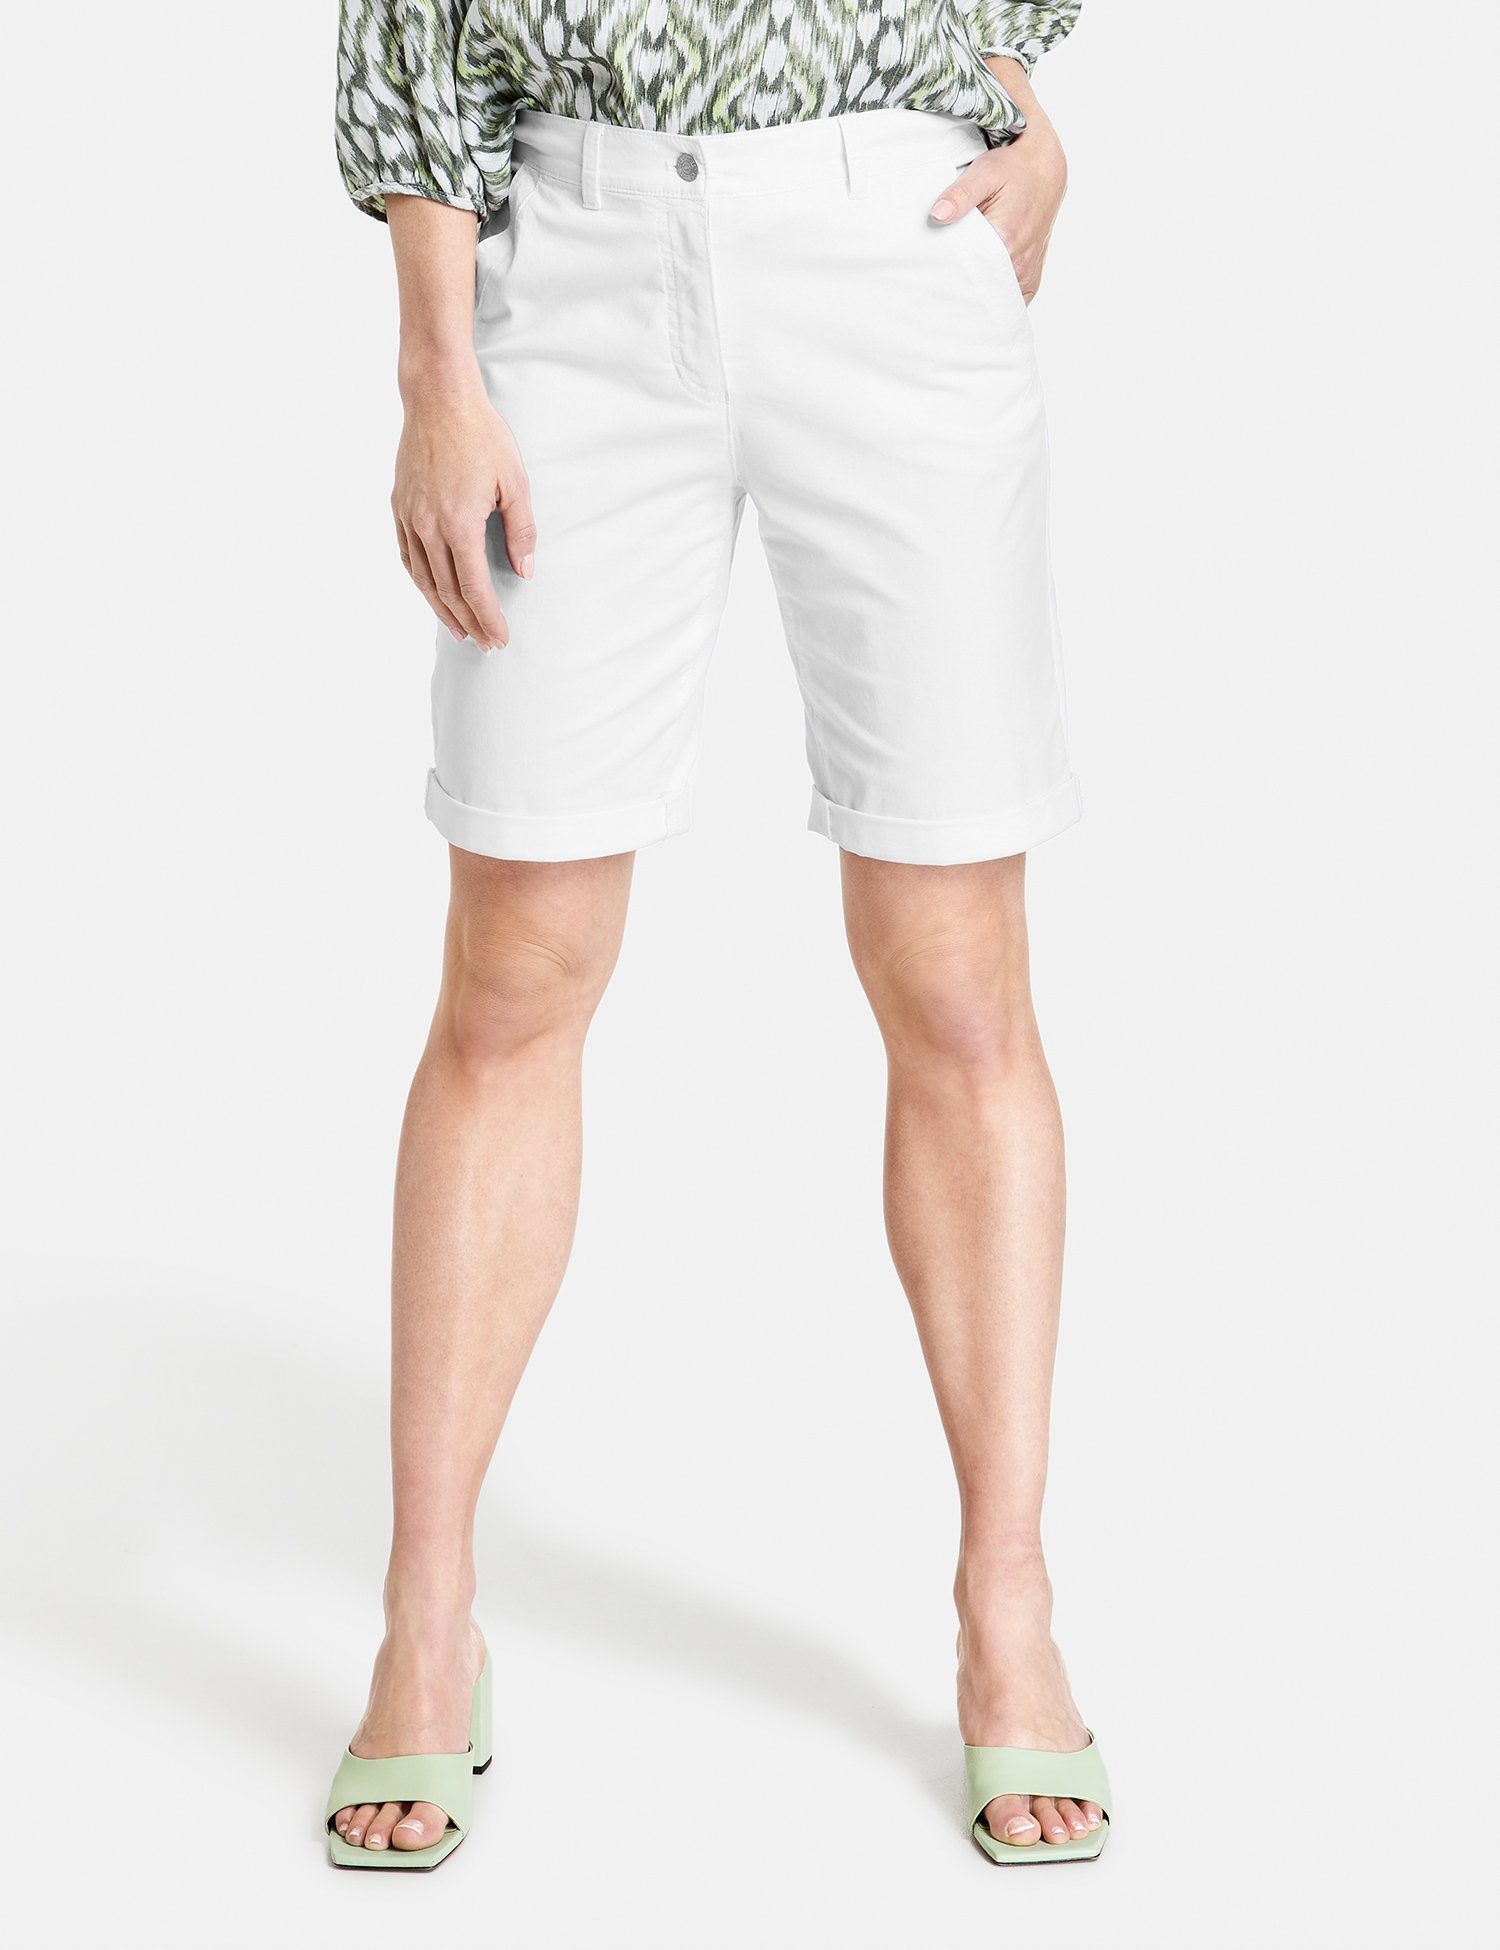 GERRY WEBER 7/8-Hose Shorts mit gekrempeltem Saum weiß/weiß | Stretchhosen